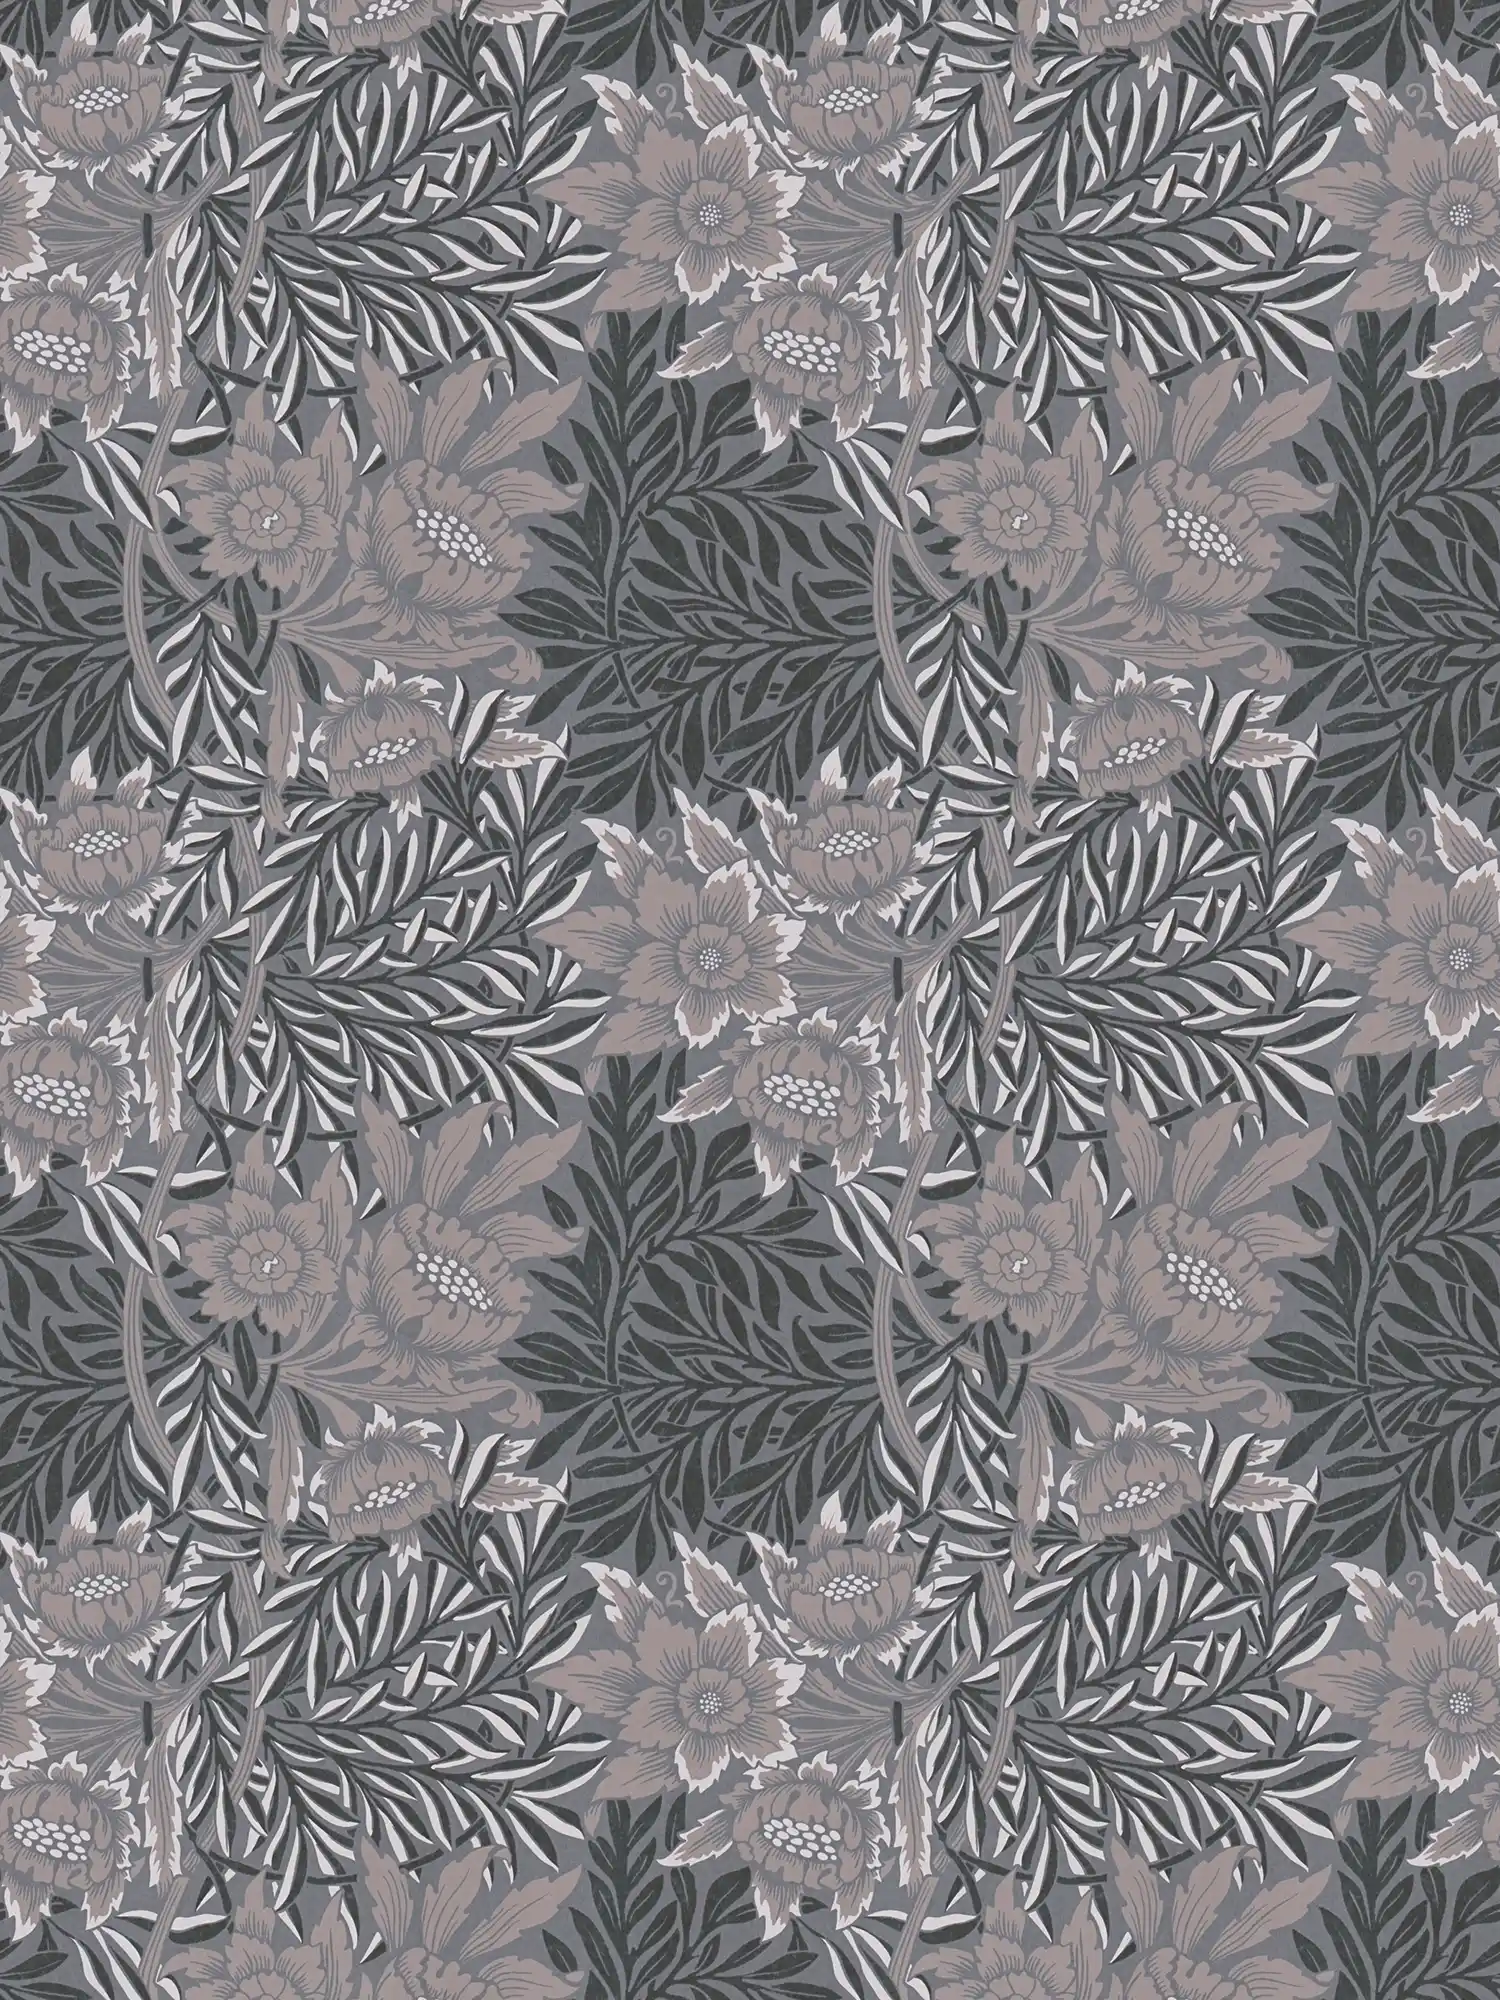 Papier peint floral avec grande fleur et rinceaux de feuilles - gris, beige, noir
